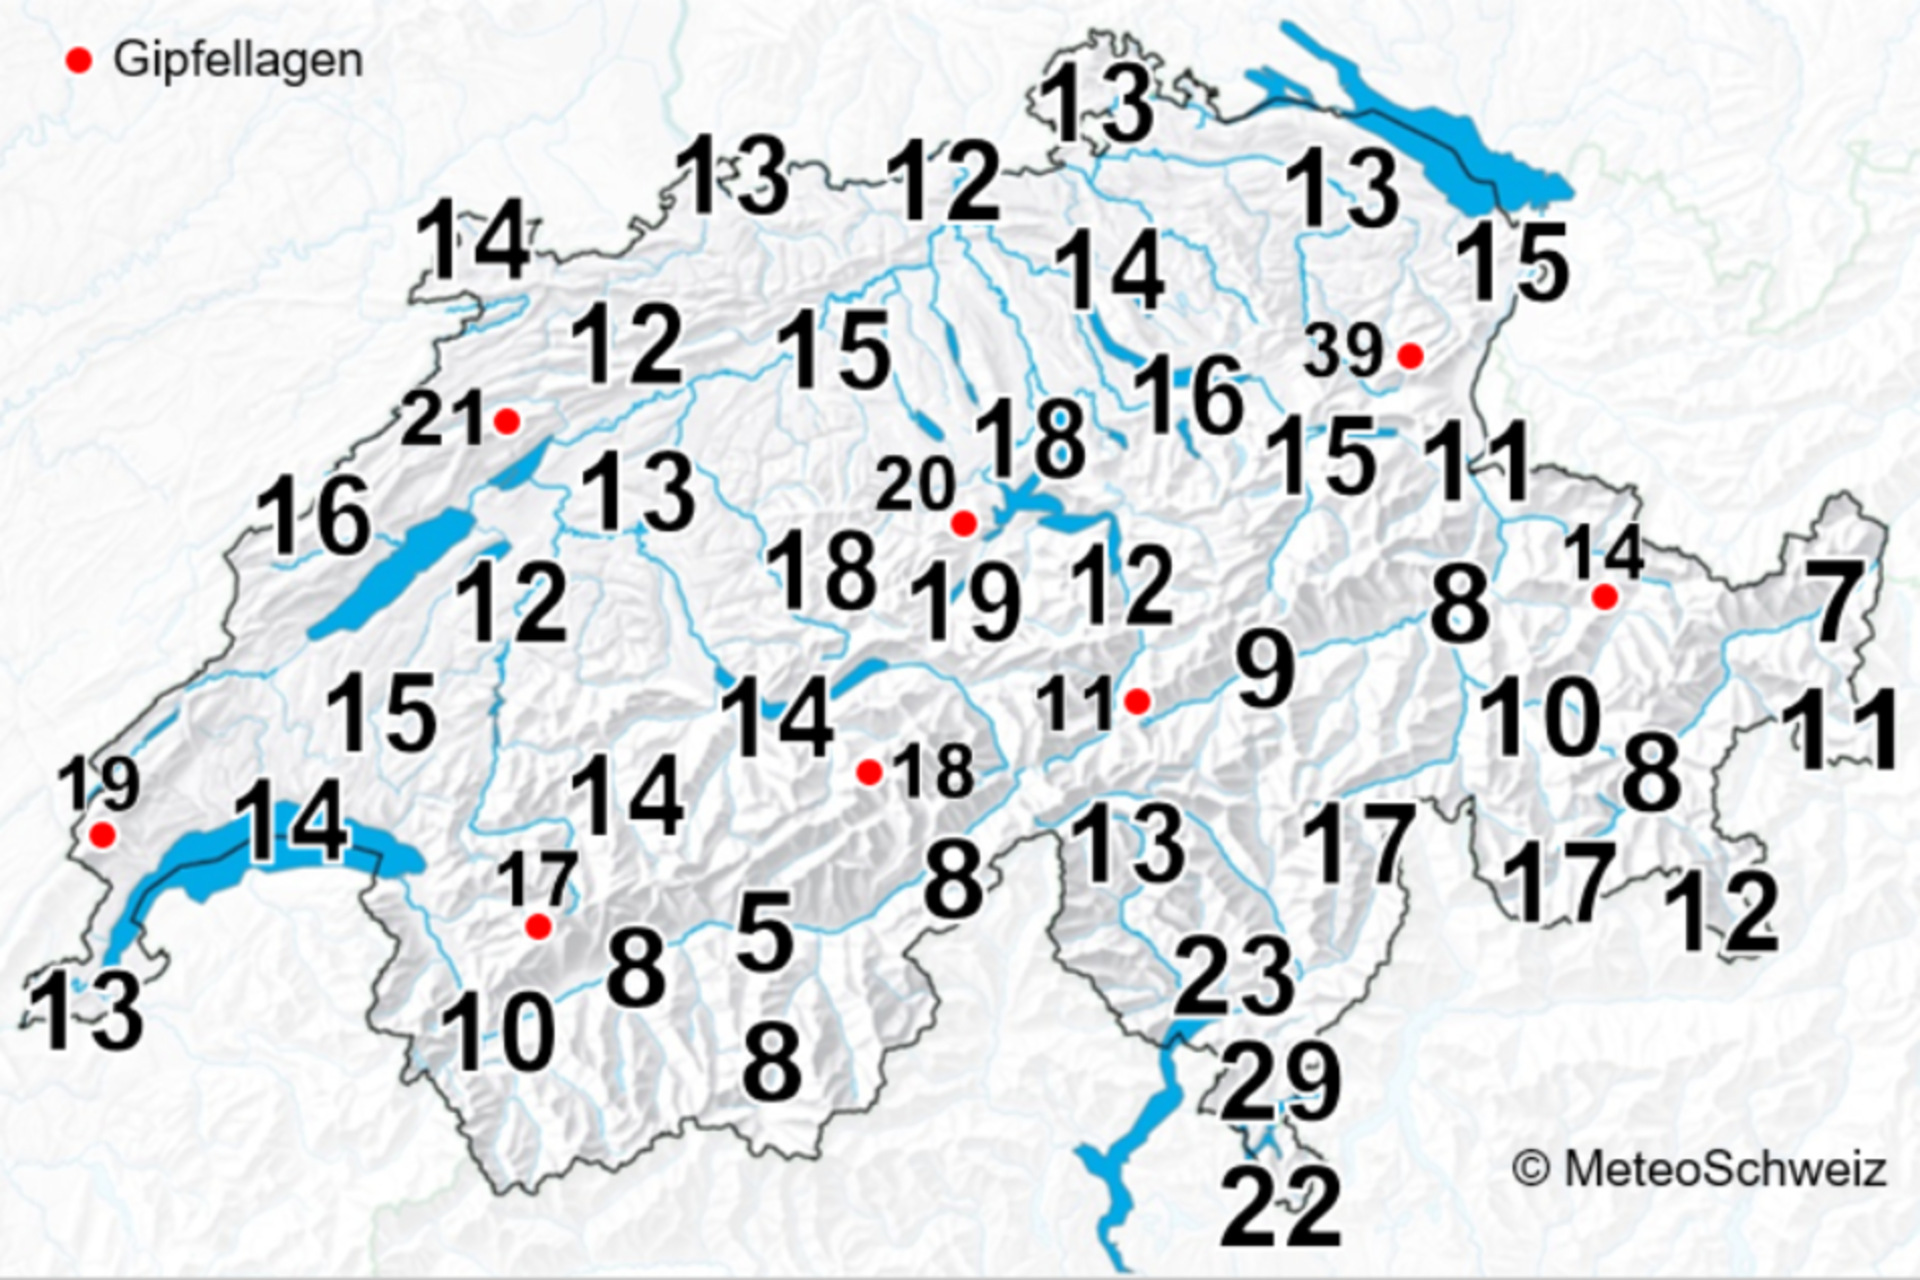 Foudre : le nombre moyen de jours avec des orages par an en Suisse, soit au moins un orage par jour, pour la période 2000-2020